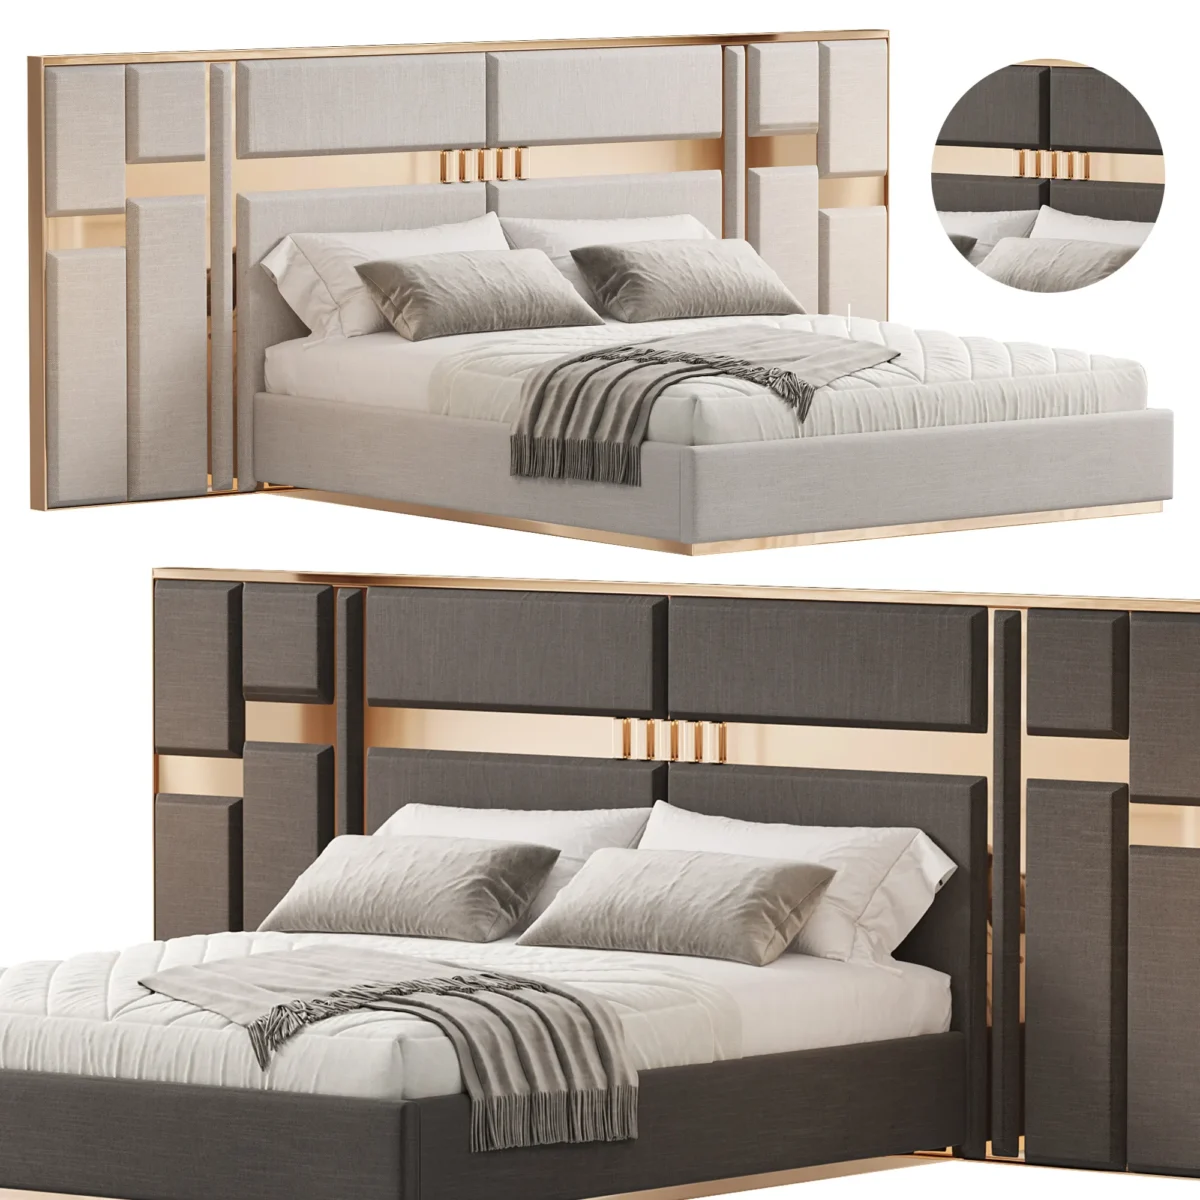 Кровать Berlis Modern 3D модель скачать на ru.cg.market, 3ds max, Corona Render